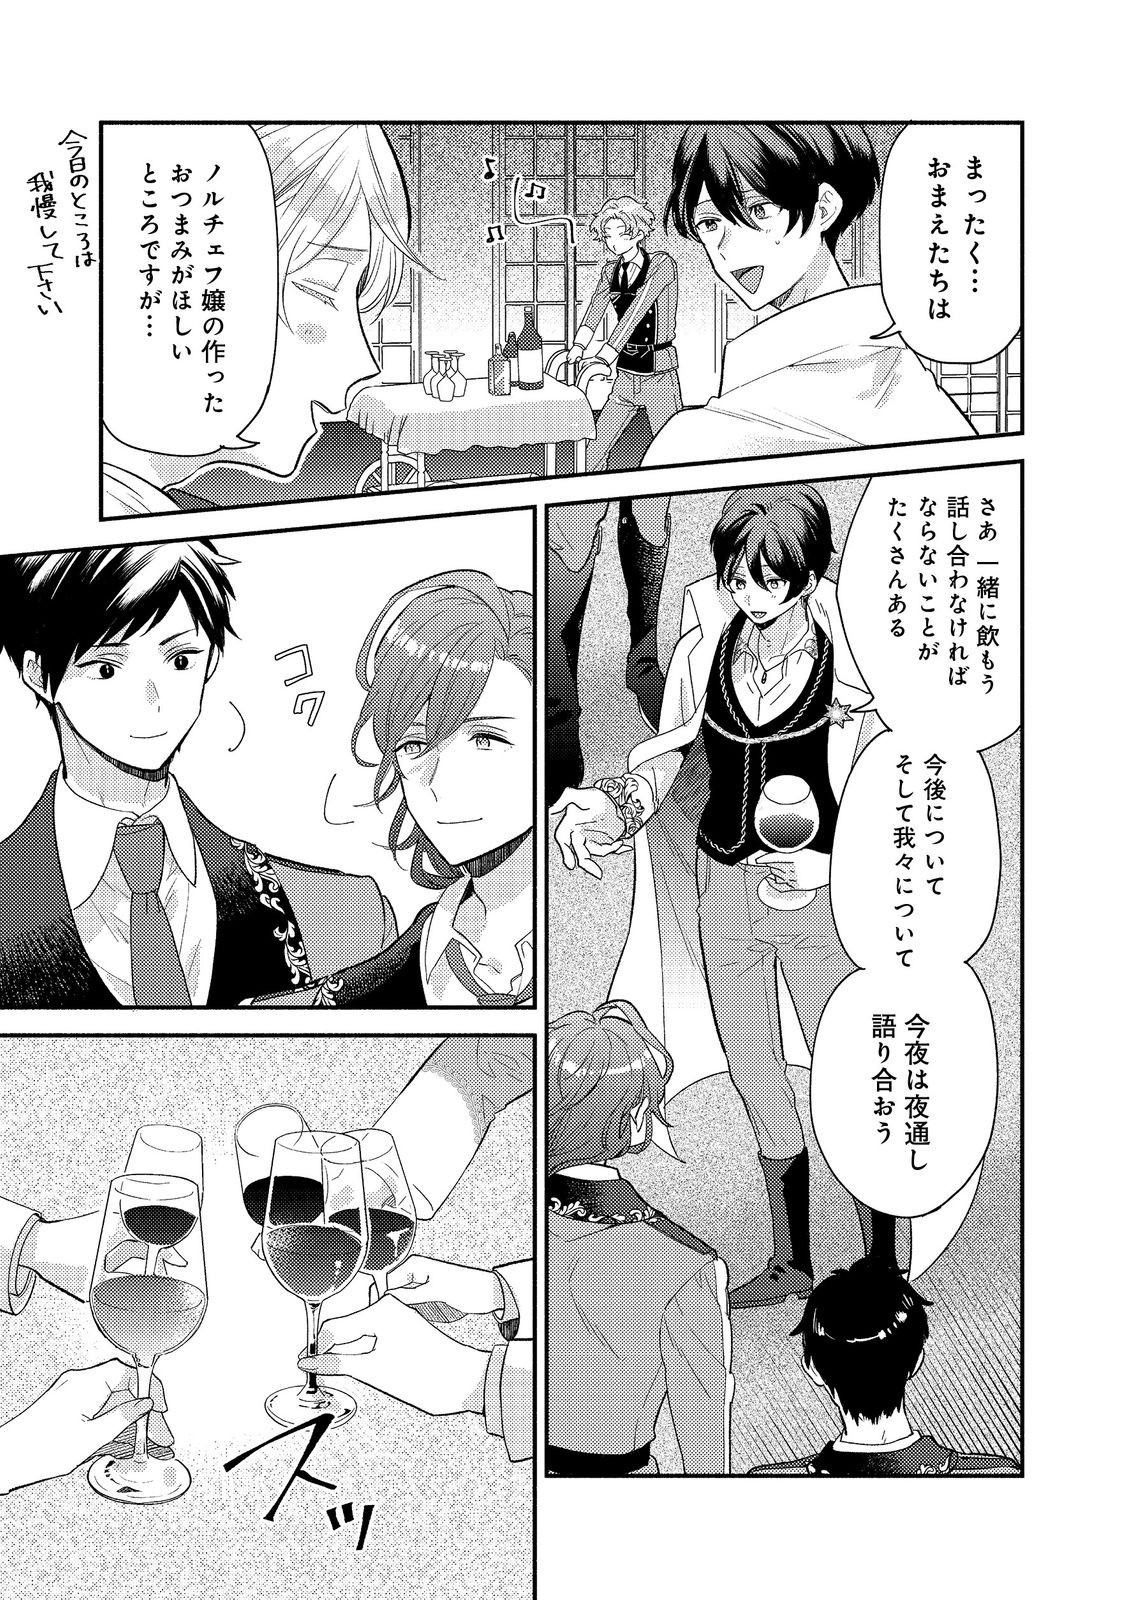 Kikan Gentei, Daishi Kishidan no Kitchen Maid – Kekkon Shitakunai no de Shuushoku shimashita - Chapter 7.1 - Page 17